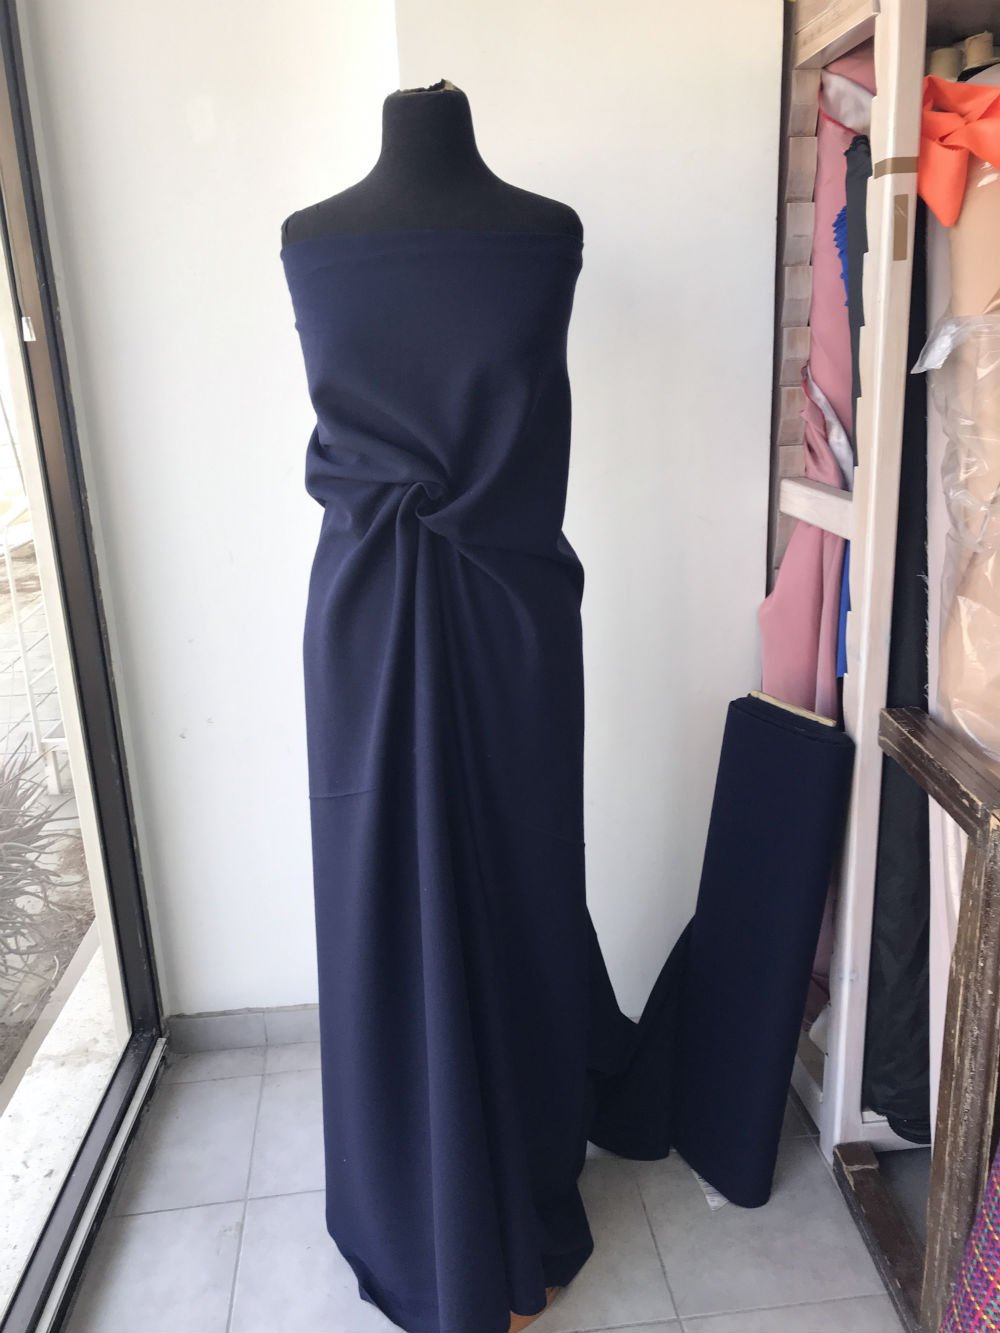 blue wool crepe fabric, dark navy blue, pebble crepe fabric made in UK skirt dress suit wool georgette